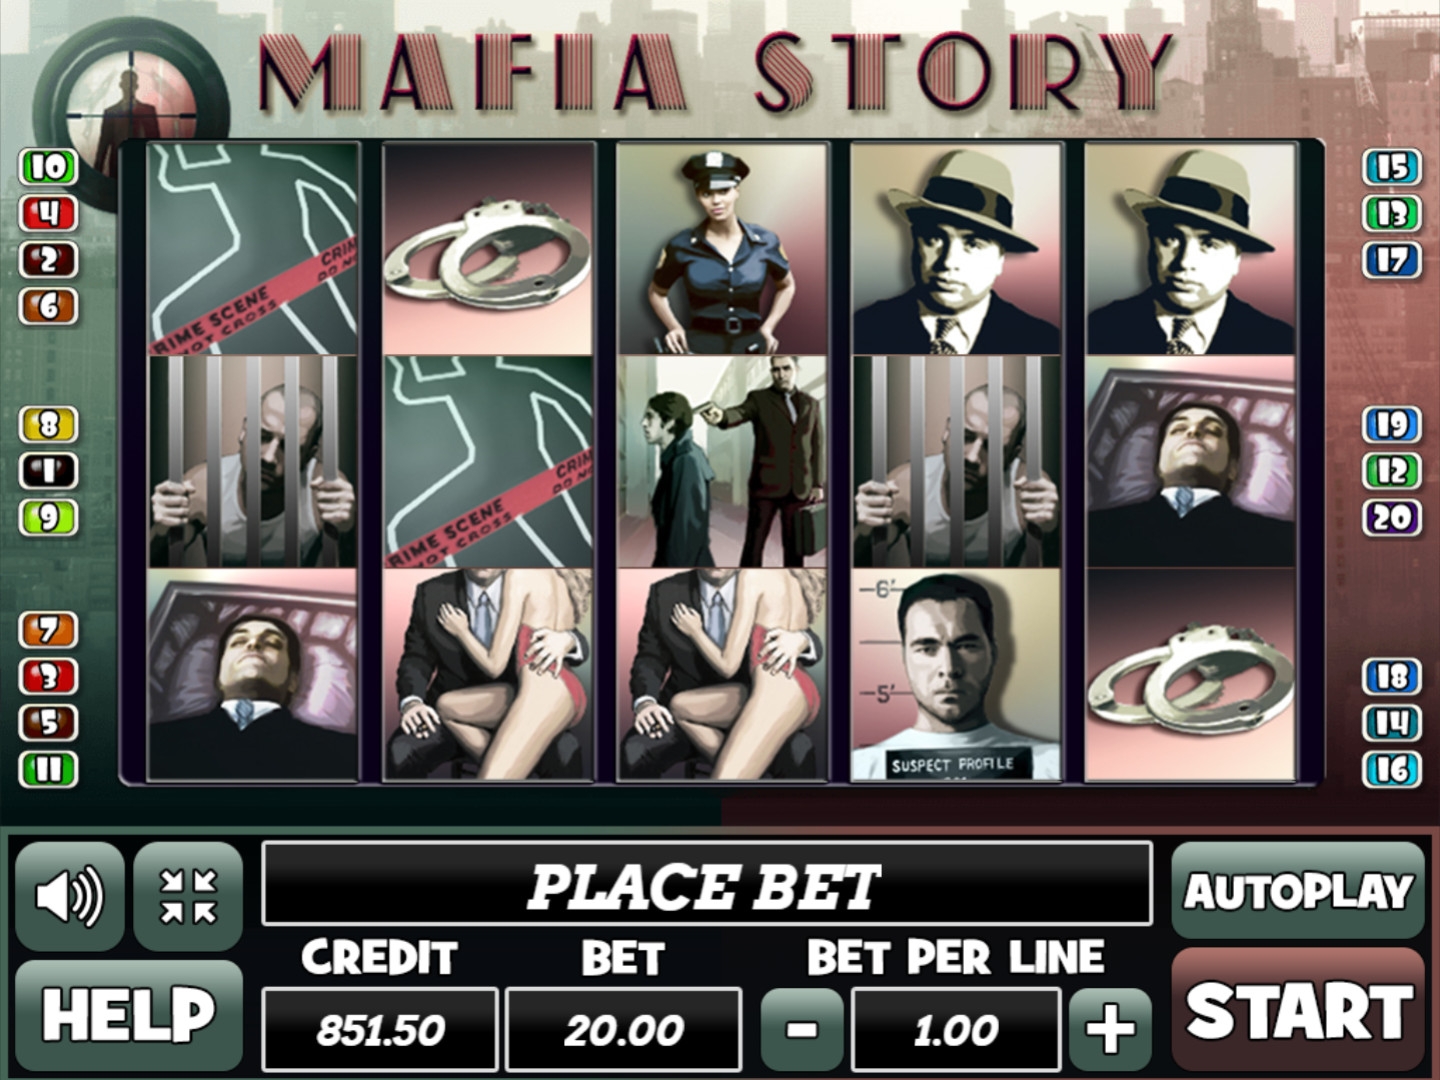 Mafia Story (Mafia Story) from category Slots